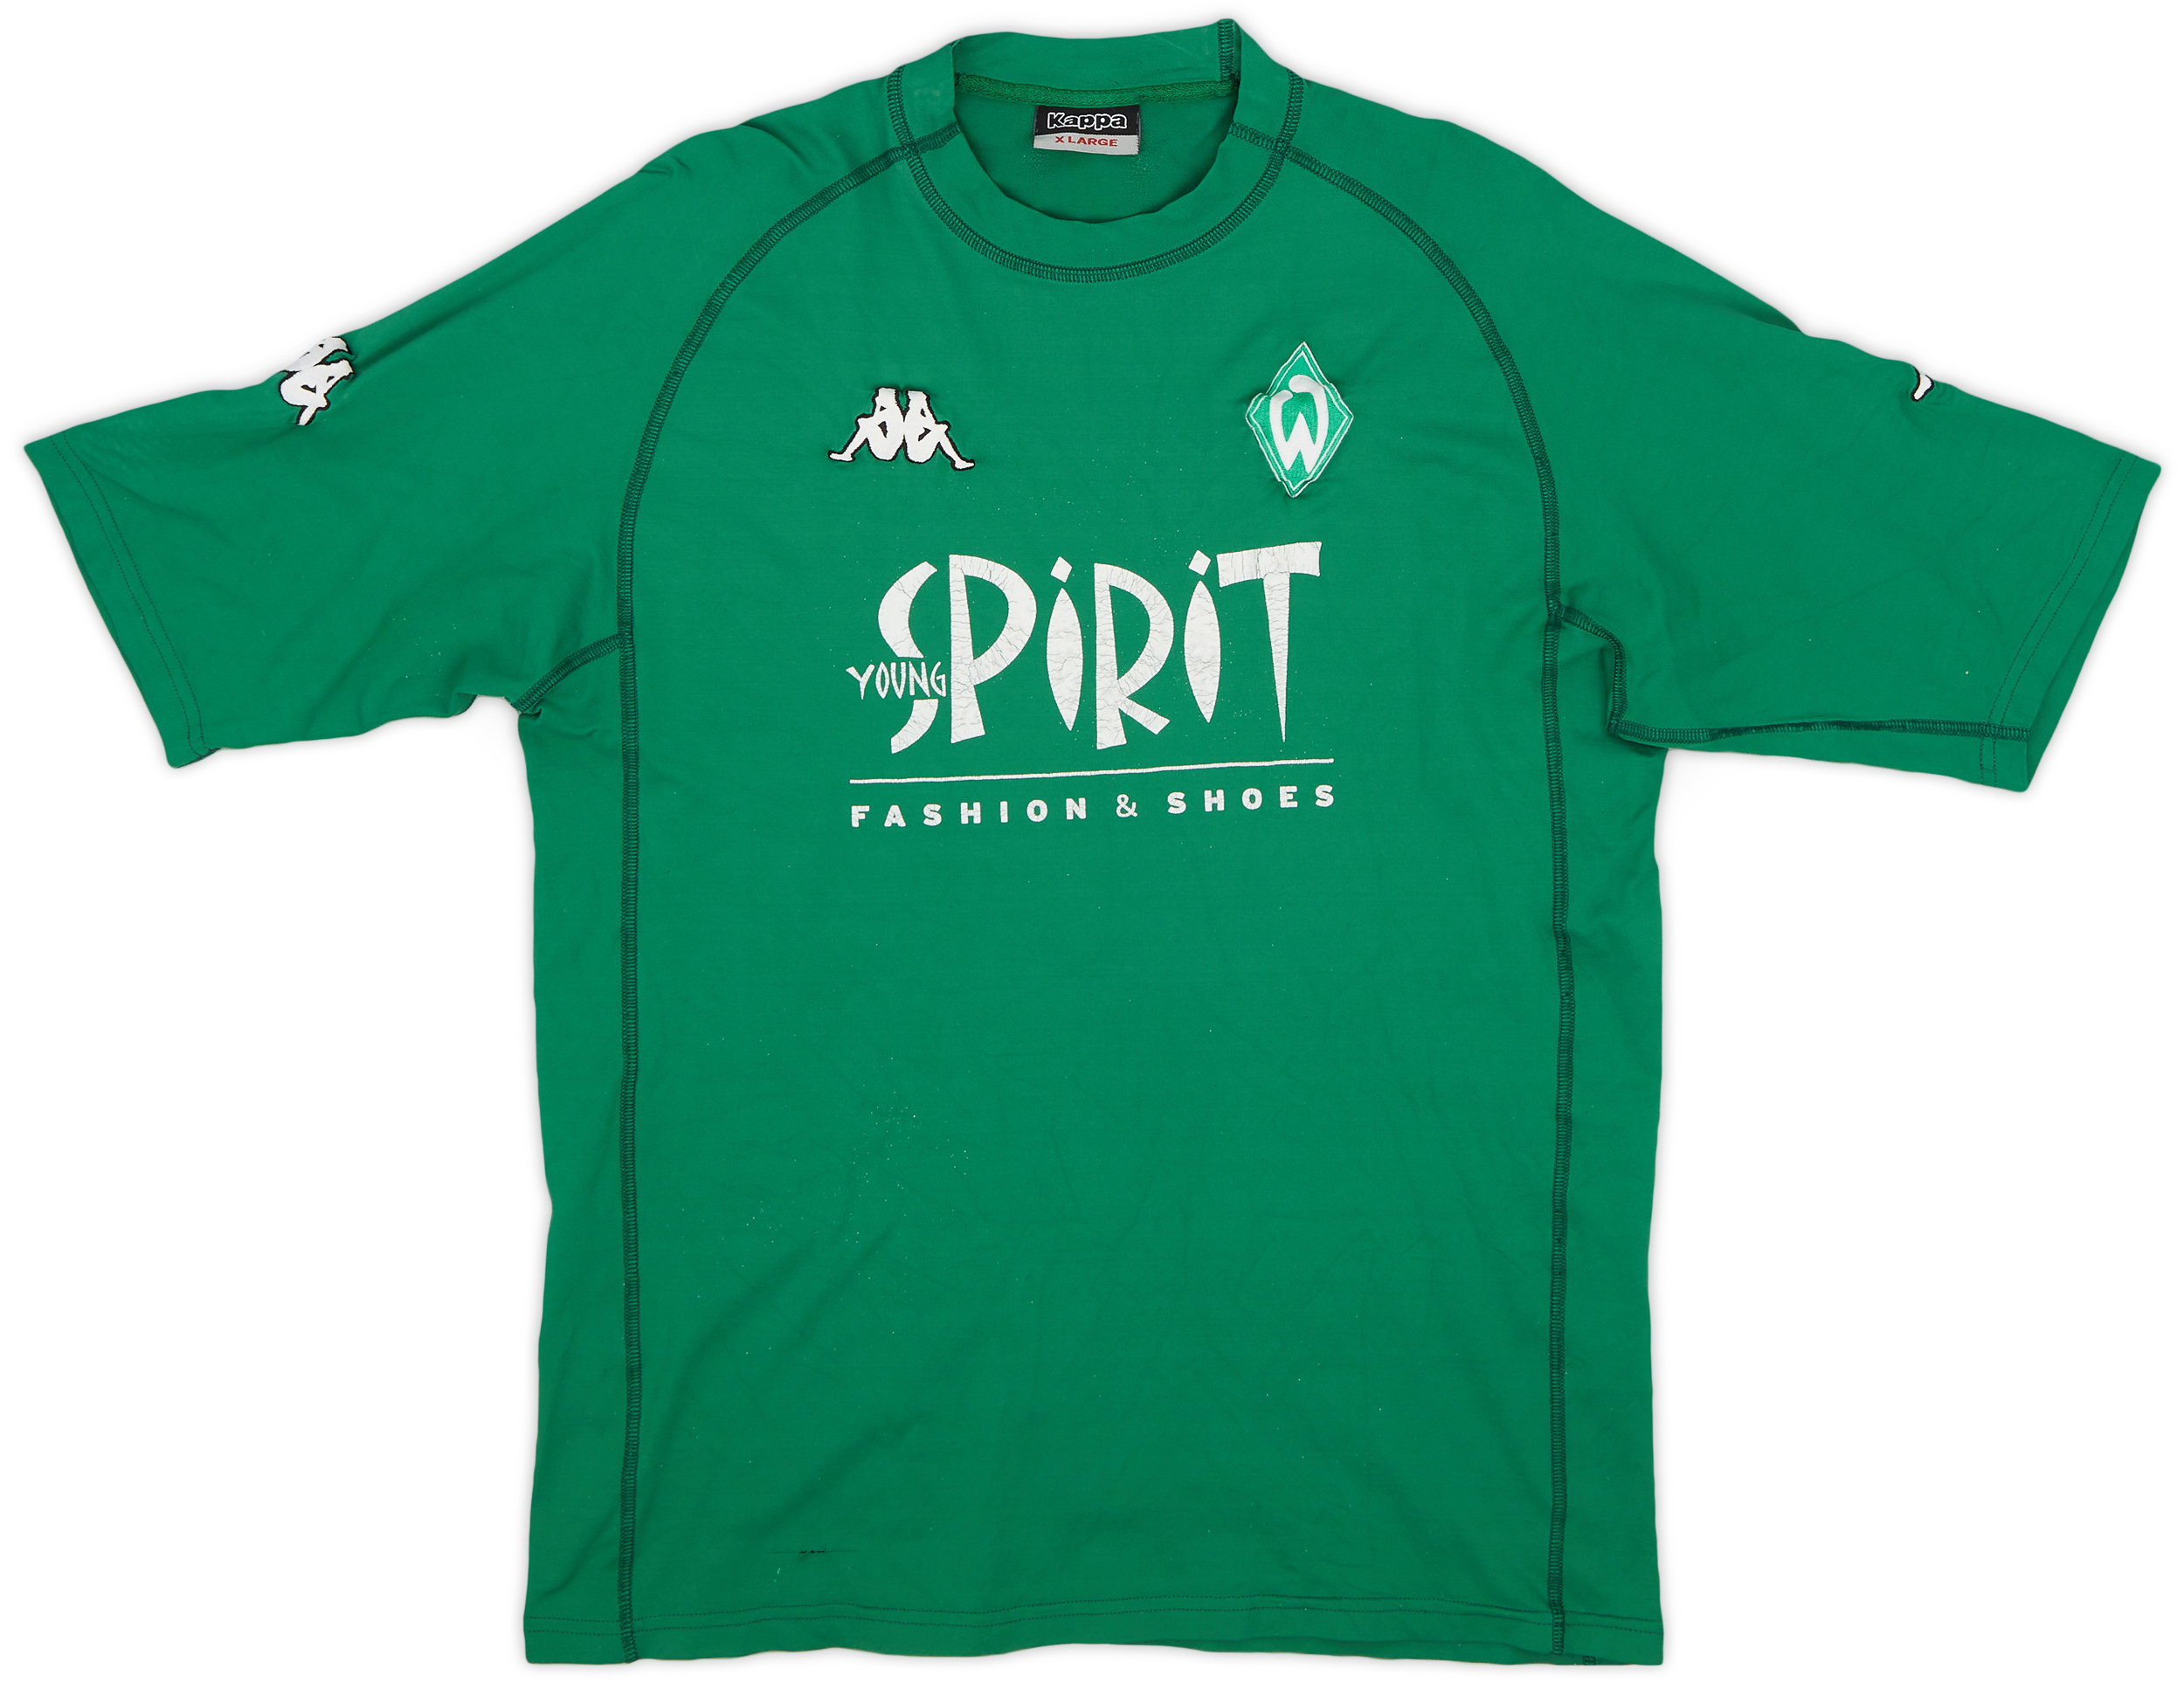 Werder Bremen  Away baju (Original)